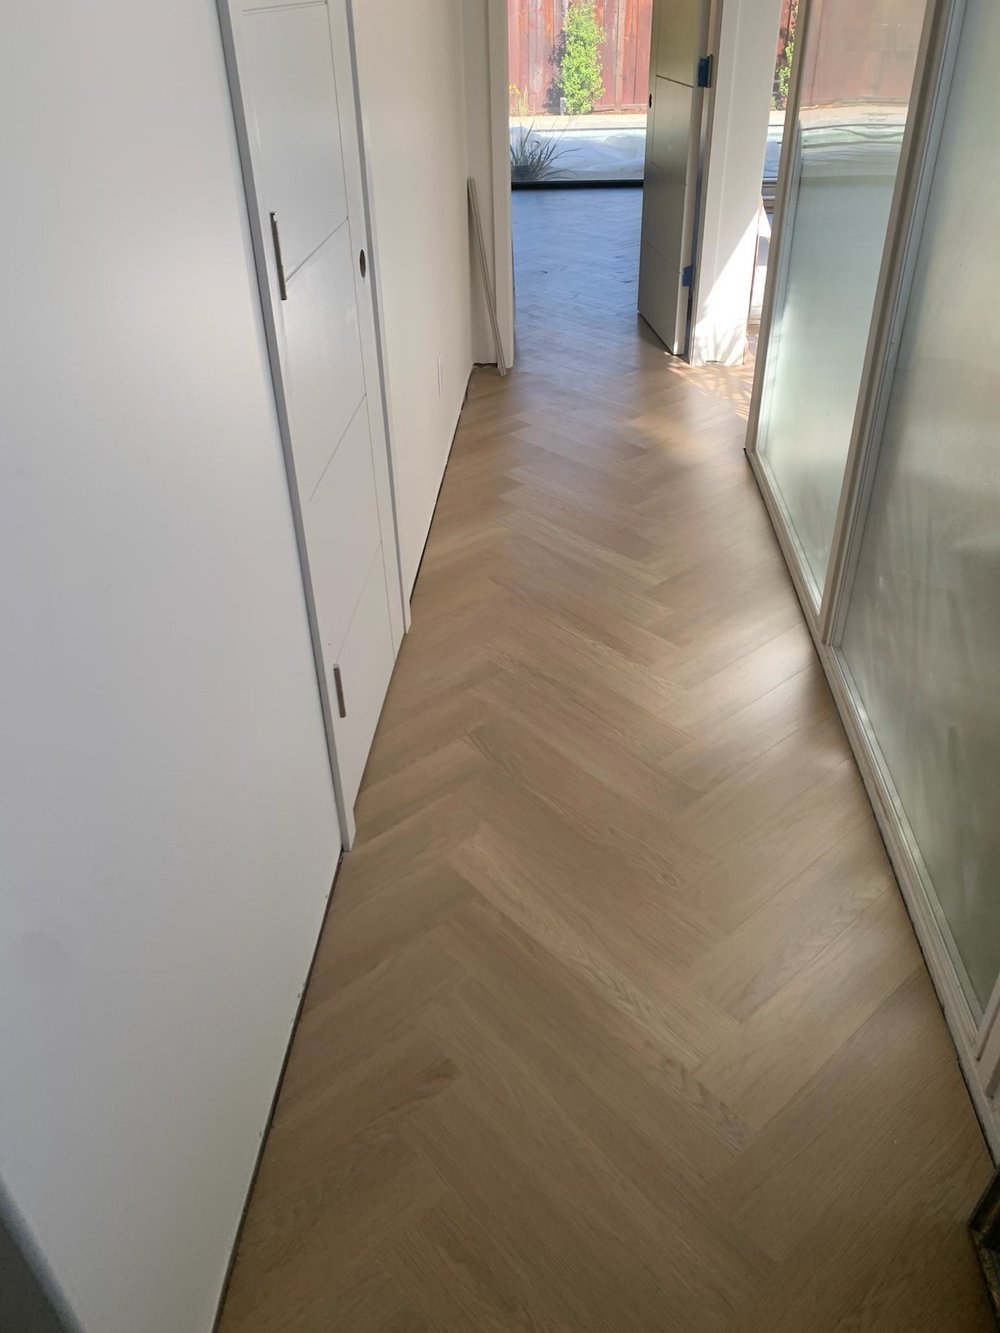 hallway floor